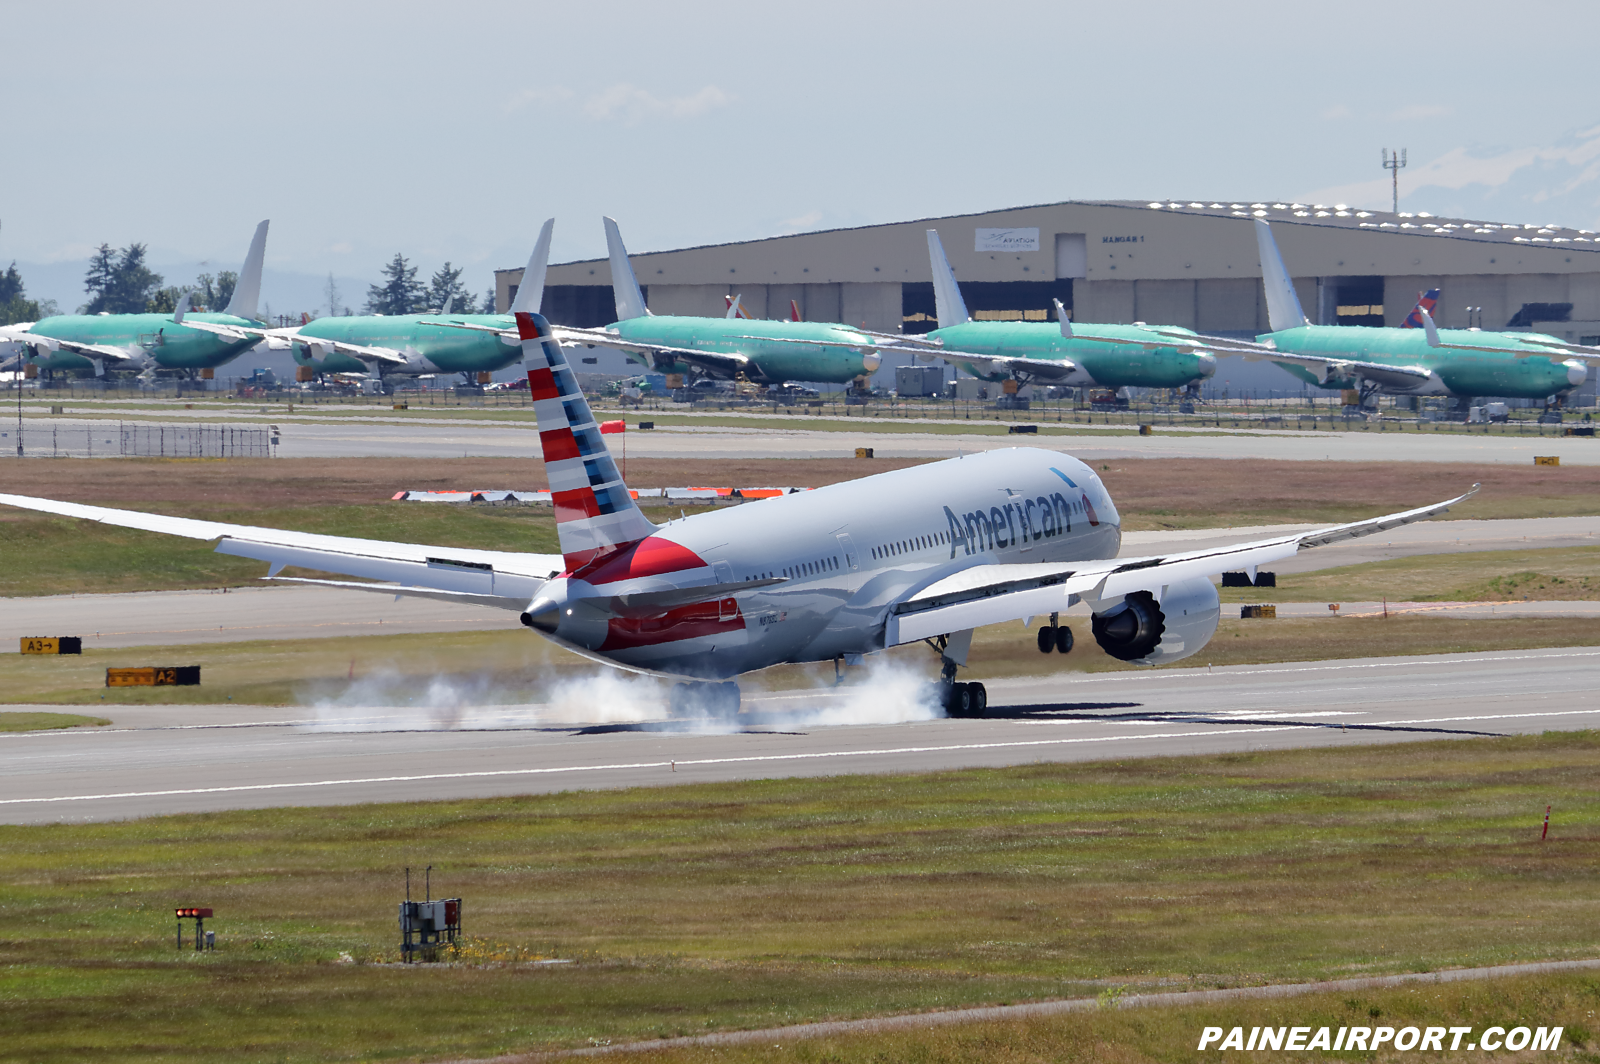 American Airlines 787-8 N878BG at KPAE Paine Field